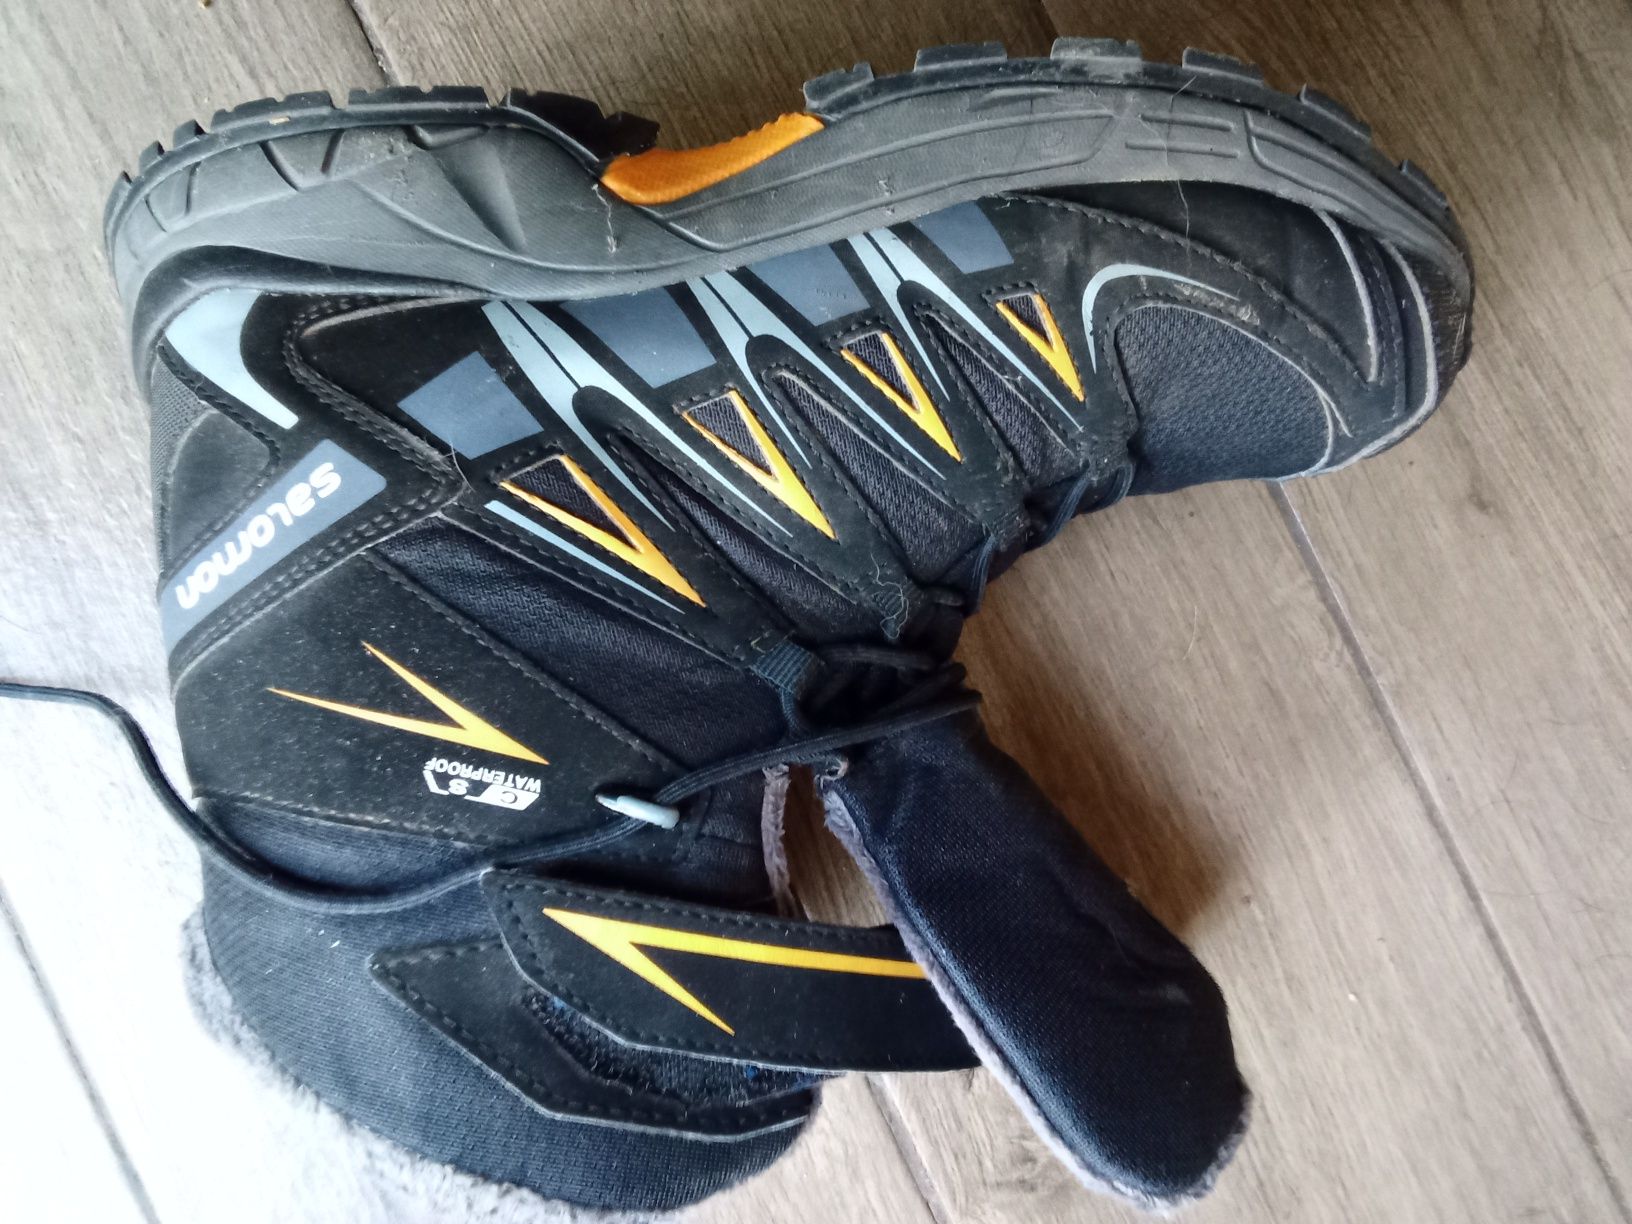 Salomon XA PRO rozm. EUR 38 Wysokie wodoodporne buty trekkingowe